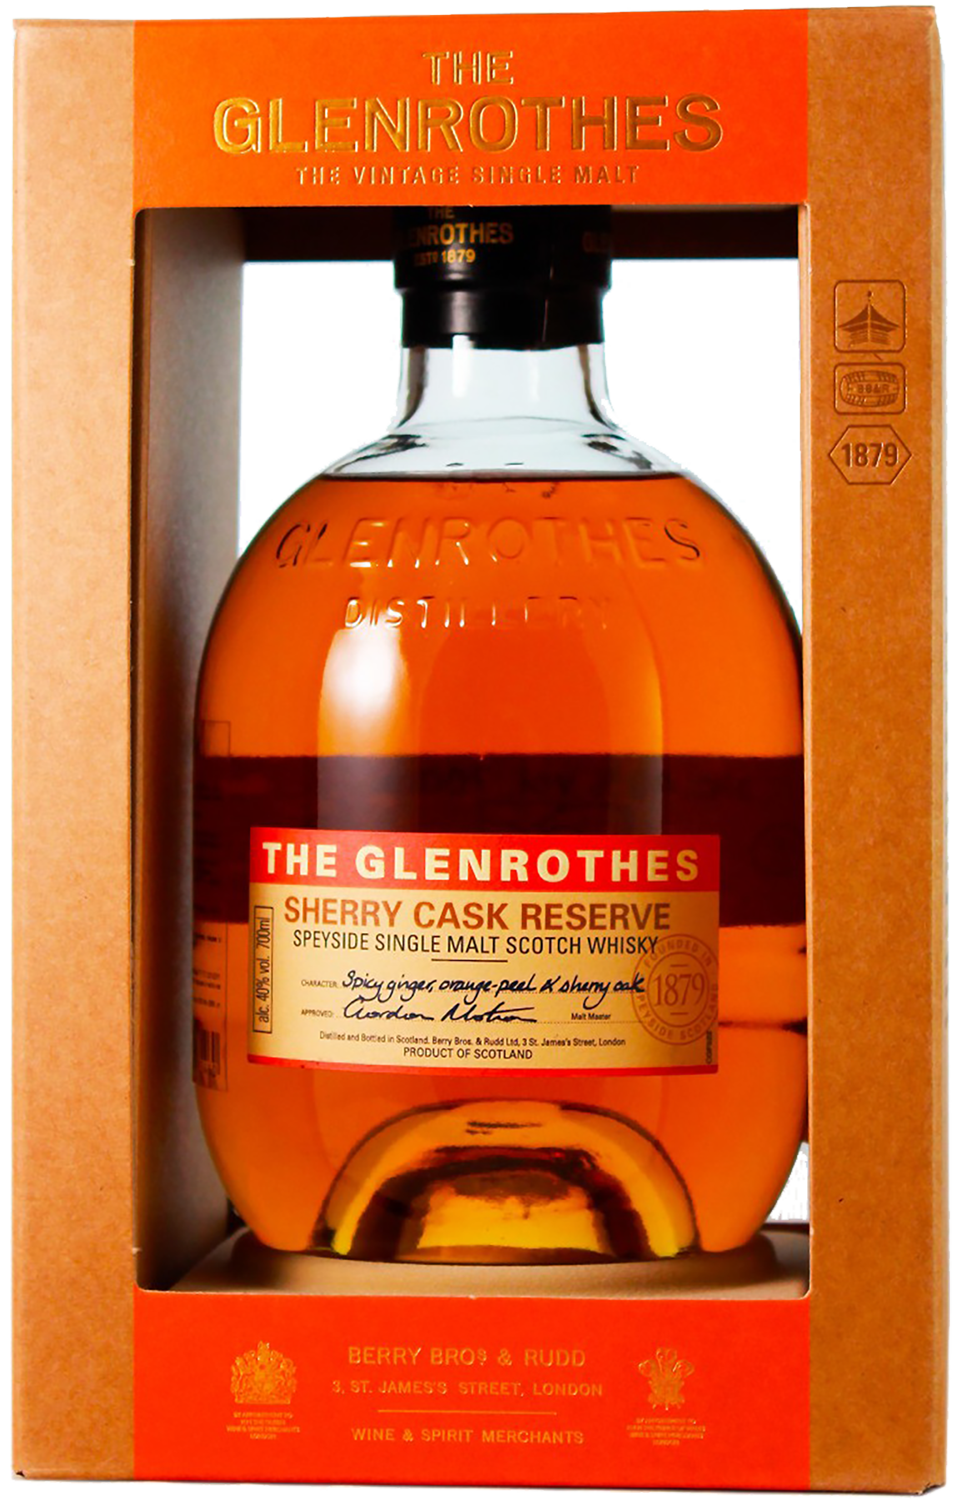 The Glenrothes Sherry Cask Reserve Speyside Single Malt Scotch Whisky(gift box) tomintoul 1977 speyside glenlivet vintage single cask single malt scotch whisky gift box